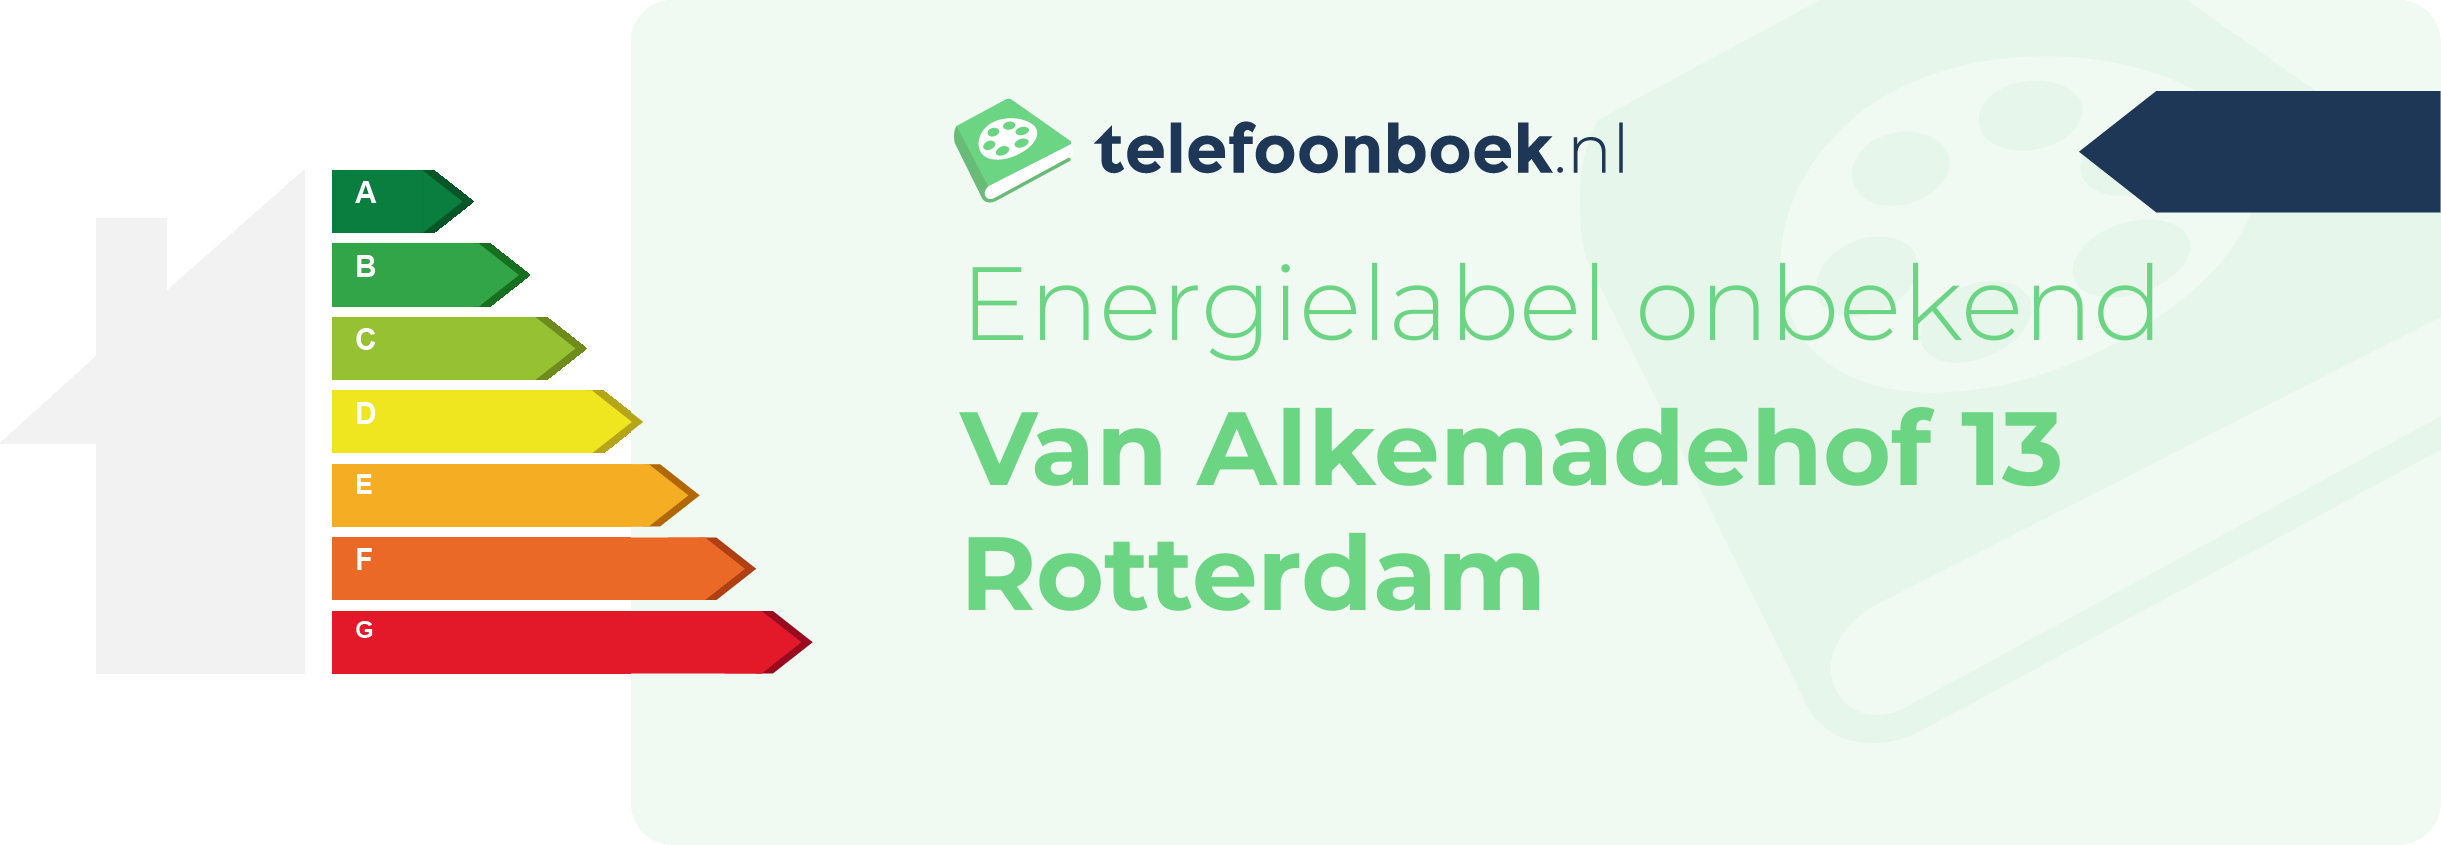 Energielabel Van Alkemadehof 13 Rotterdam